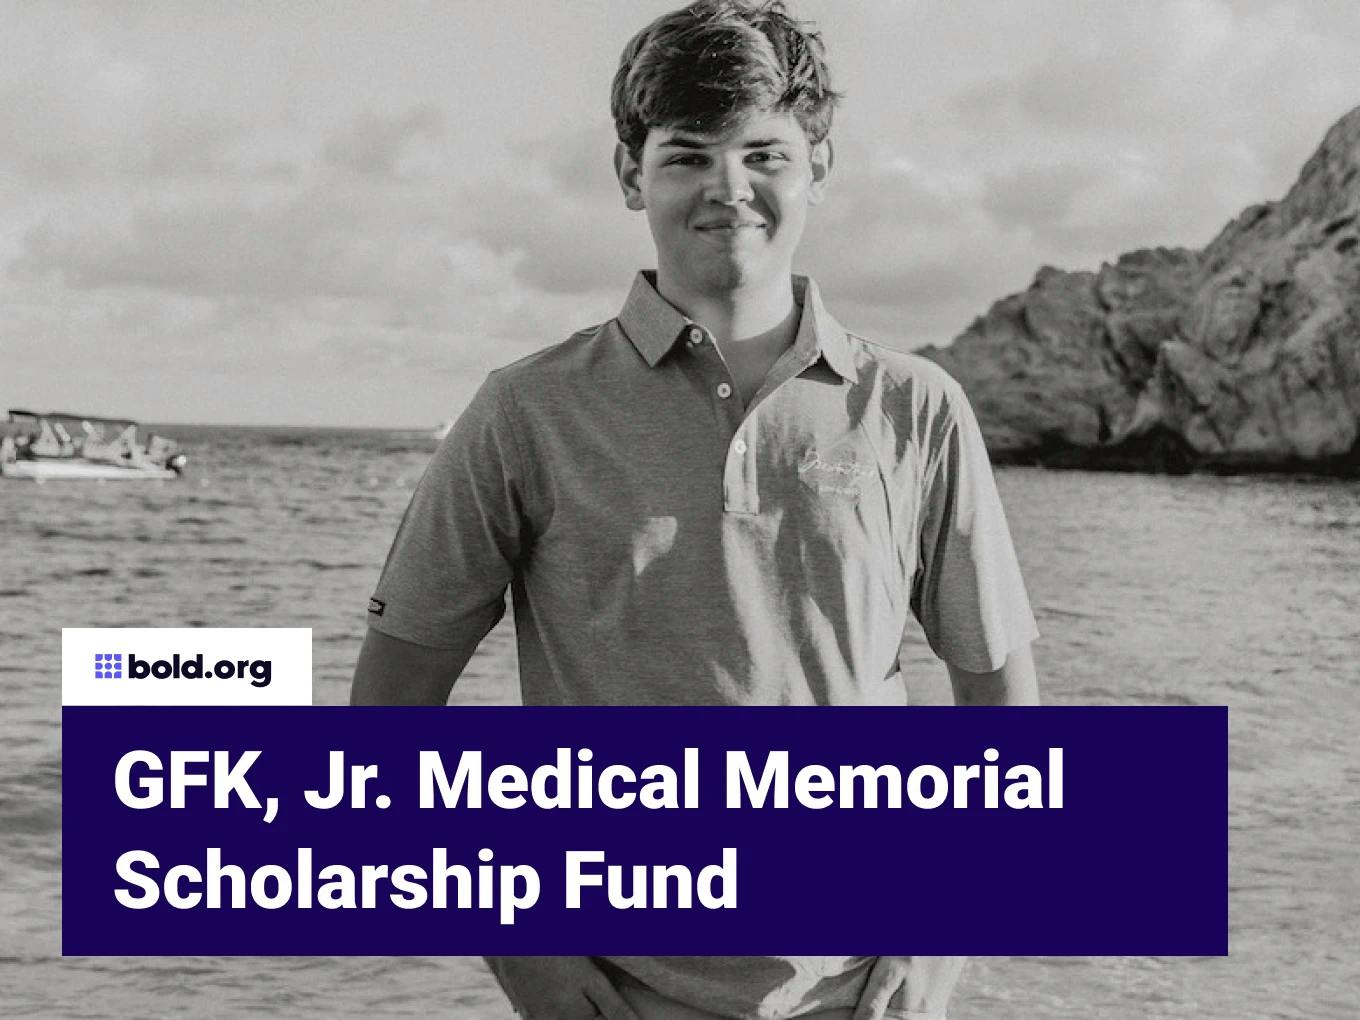 The GFK, Jr. Medical Memorial Scholarship Fund